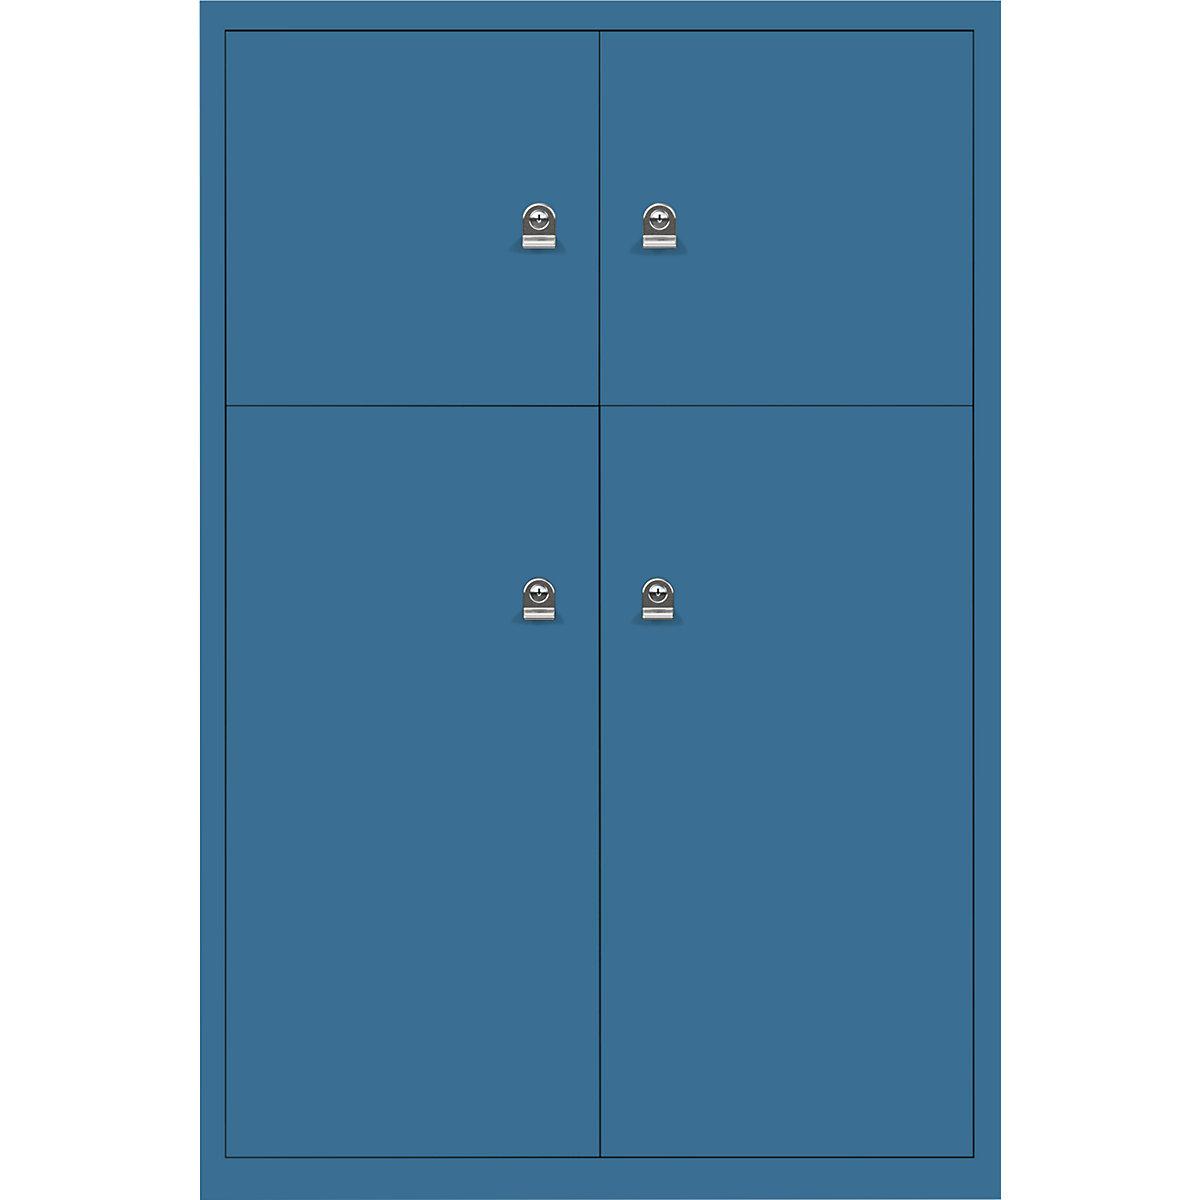 Ormar LateralFile™ Lodge – BISLEY, s 4 pretinca sa zaključavanjem, visina 2 x 375 mm, 2 x 755 mm, u azurno plavoj boji-13